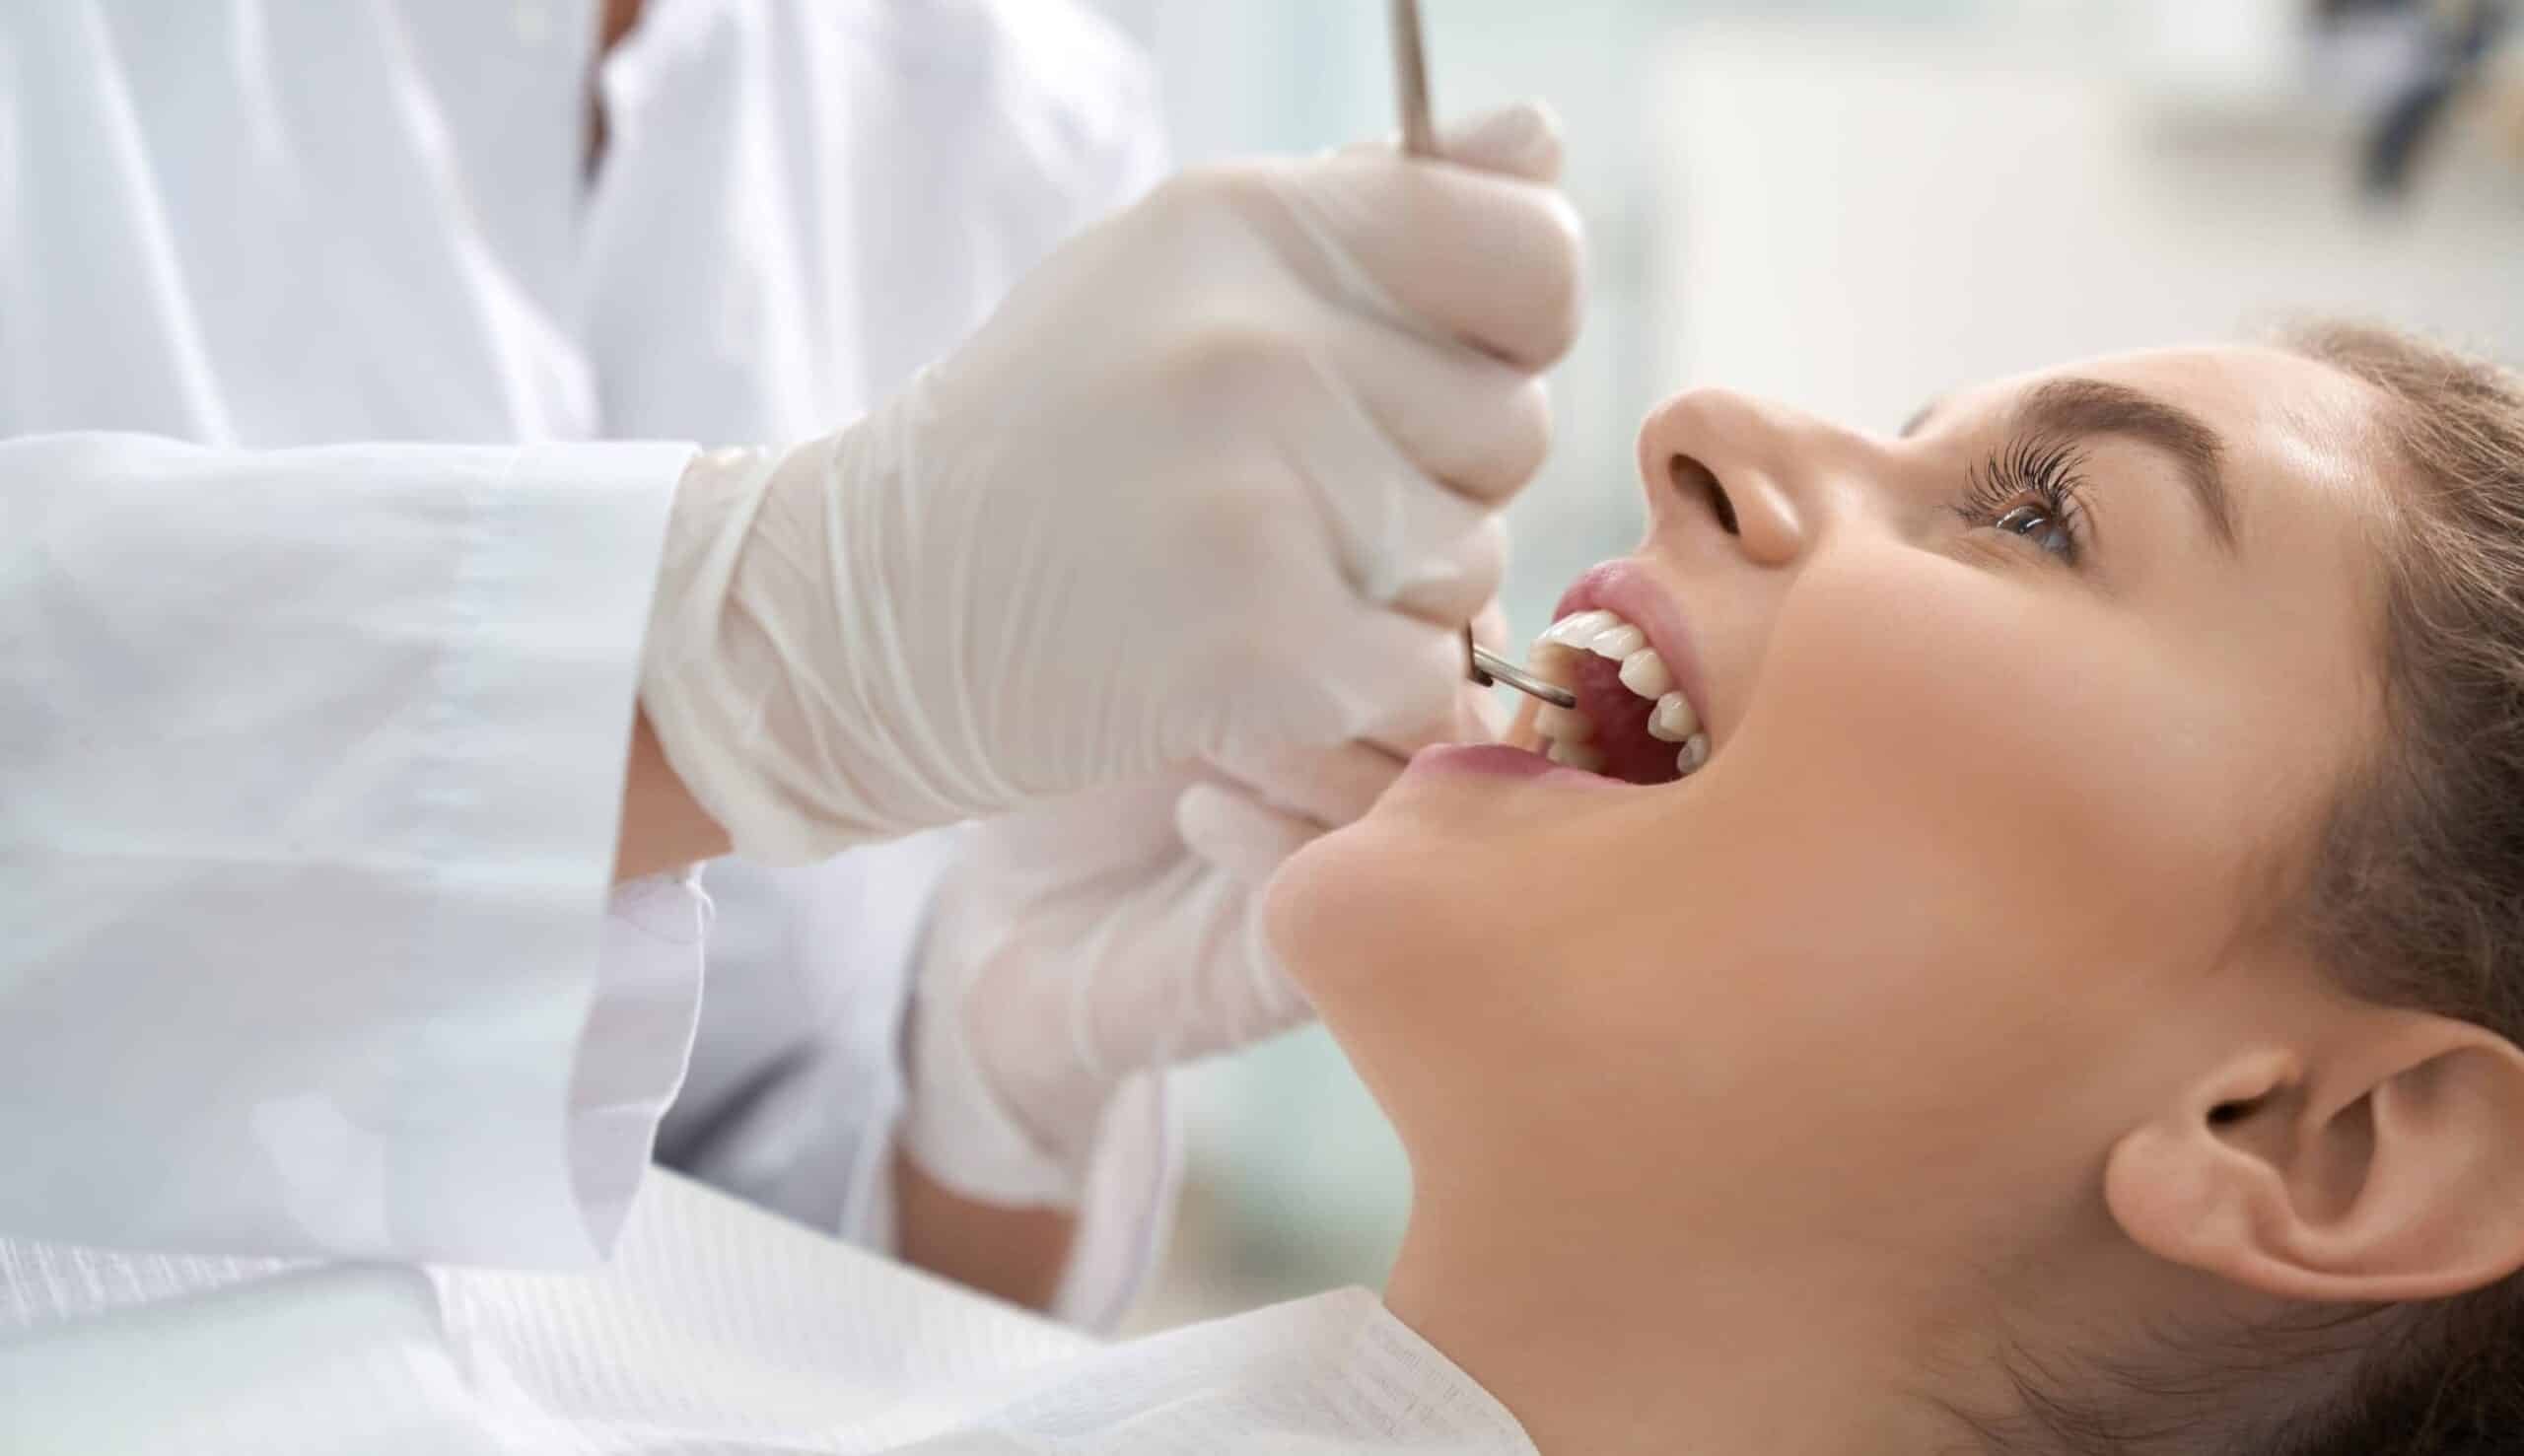 Quand l'implant est-il nécessaire pour la pose de couronne ? | Clinique dentaire Sana Oris | Paris 8